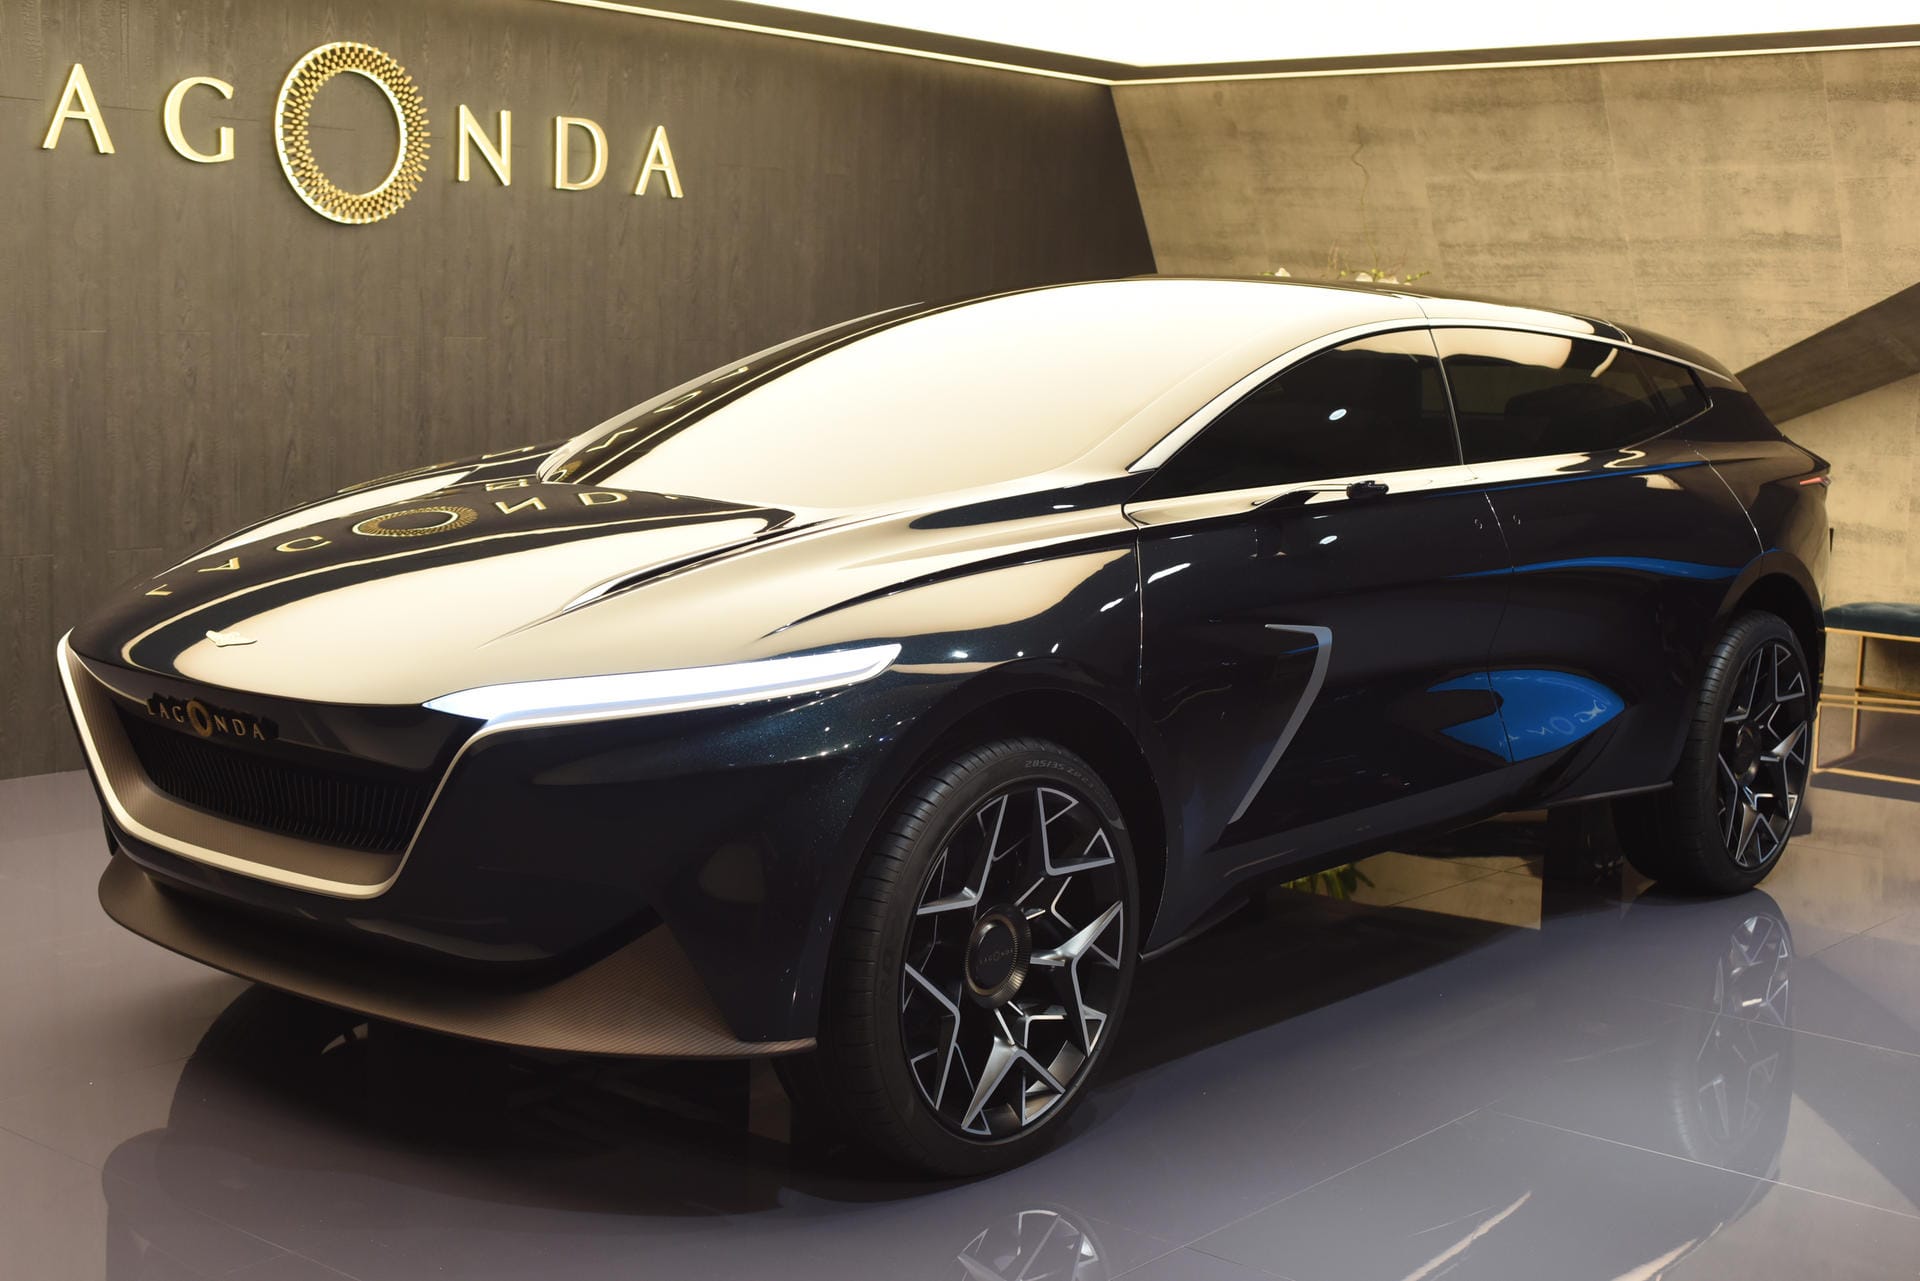 Aston-Martin-Tochter: Ab 2022 soll die Marke Lagonda die Produktion aufnehmen. Das erste Auto könnte diesem SUV stark ähneln.